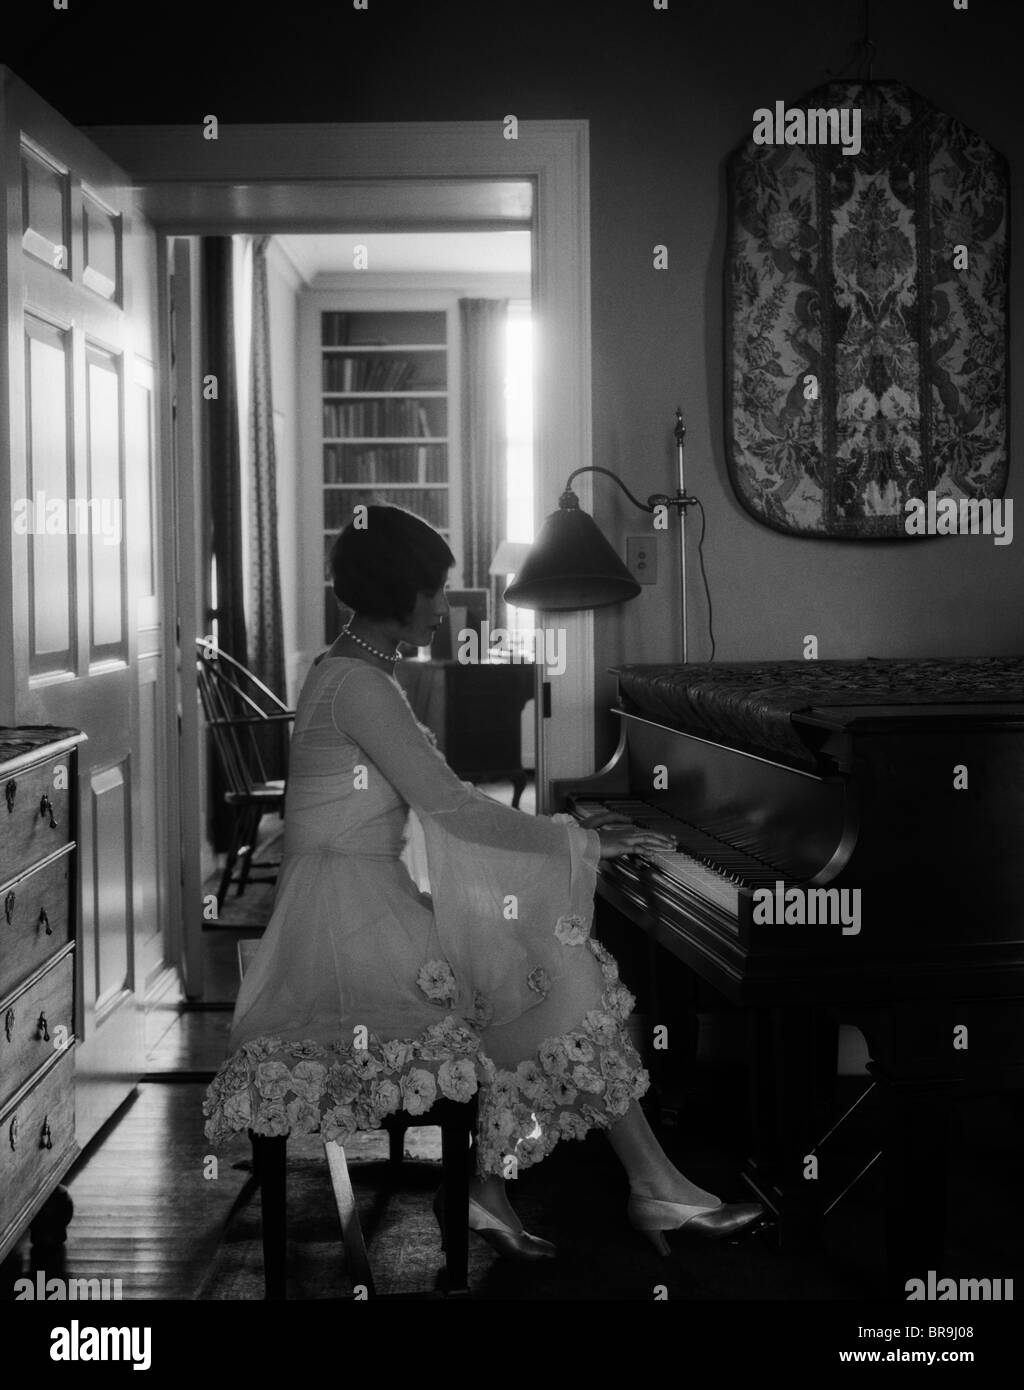 Années 1920, le pianiste FEMME ASSIS À JOUER DU PIANO Banque D'Images